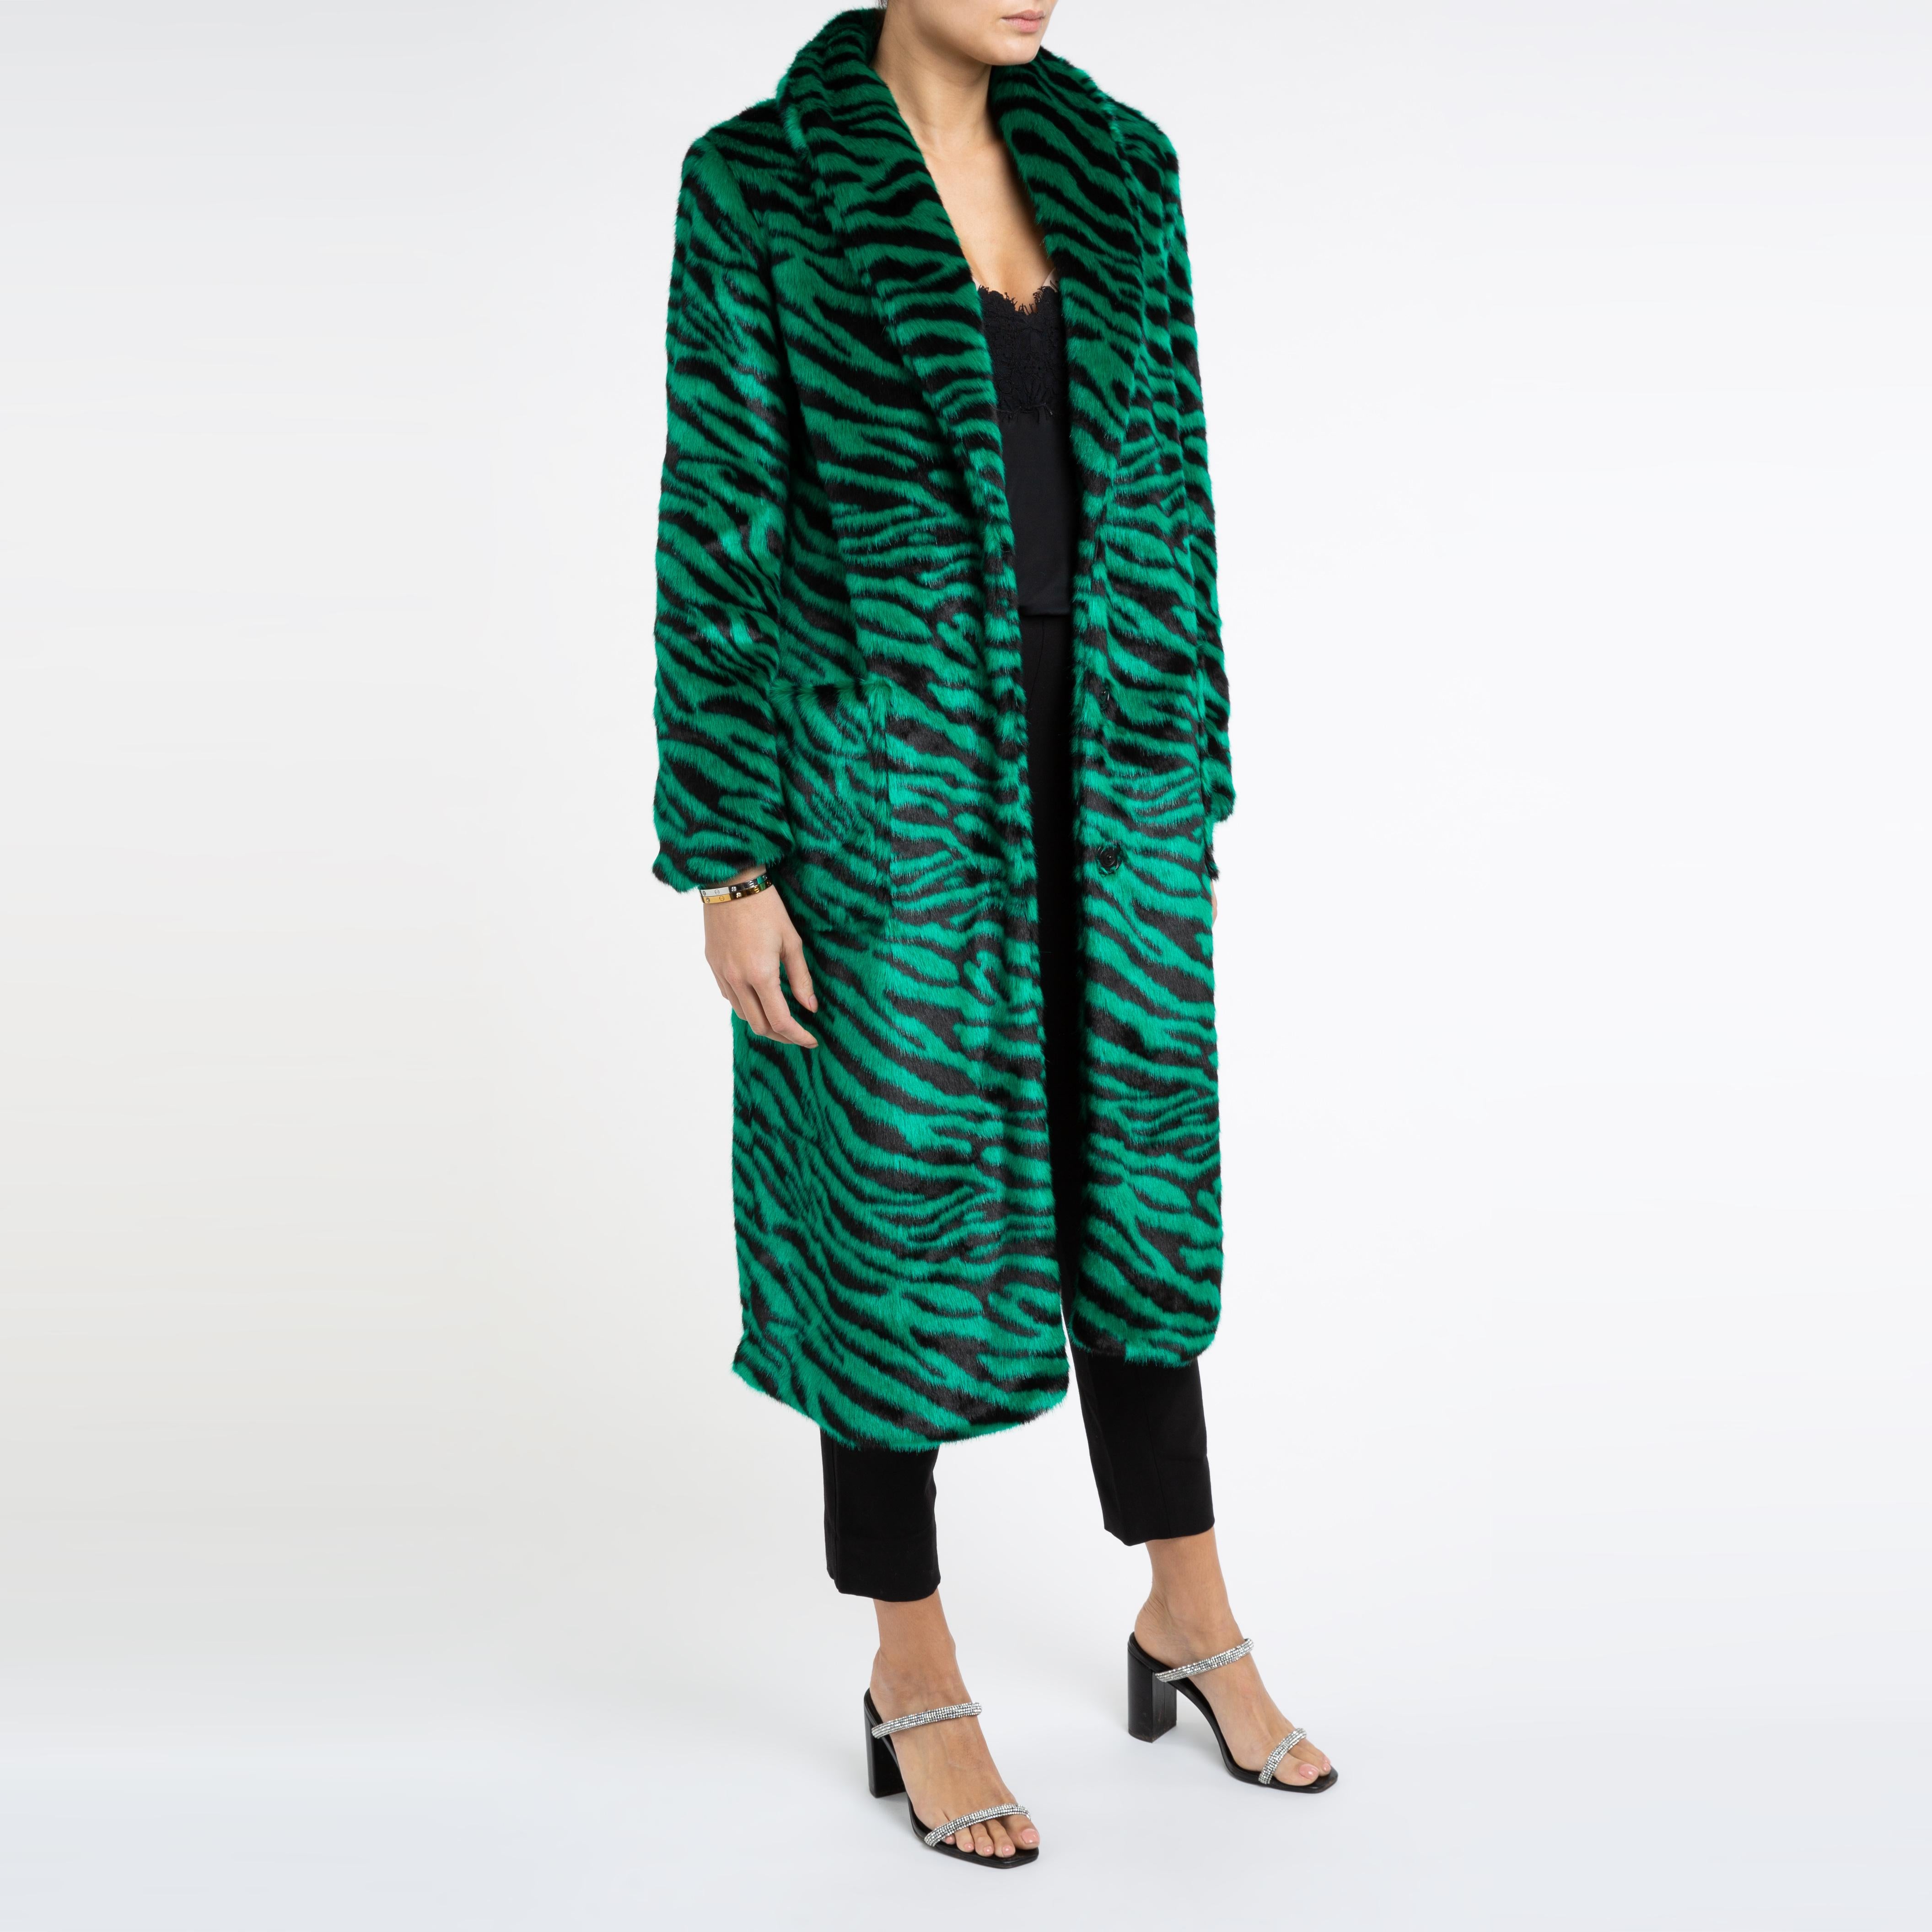 Verheyen London Esmeralda Faux Fur Coat in Emerald Green Zebra Print size uk 8 1